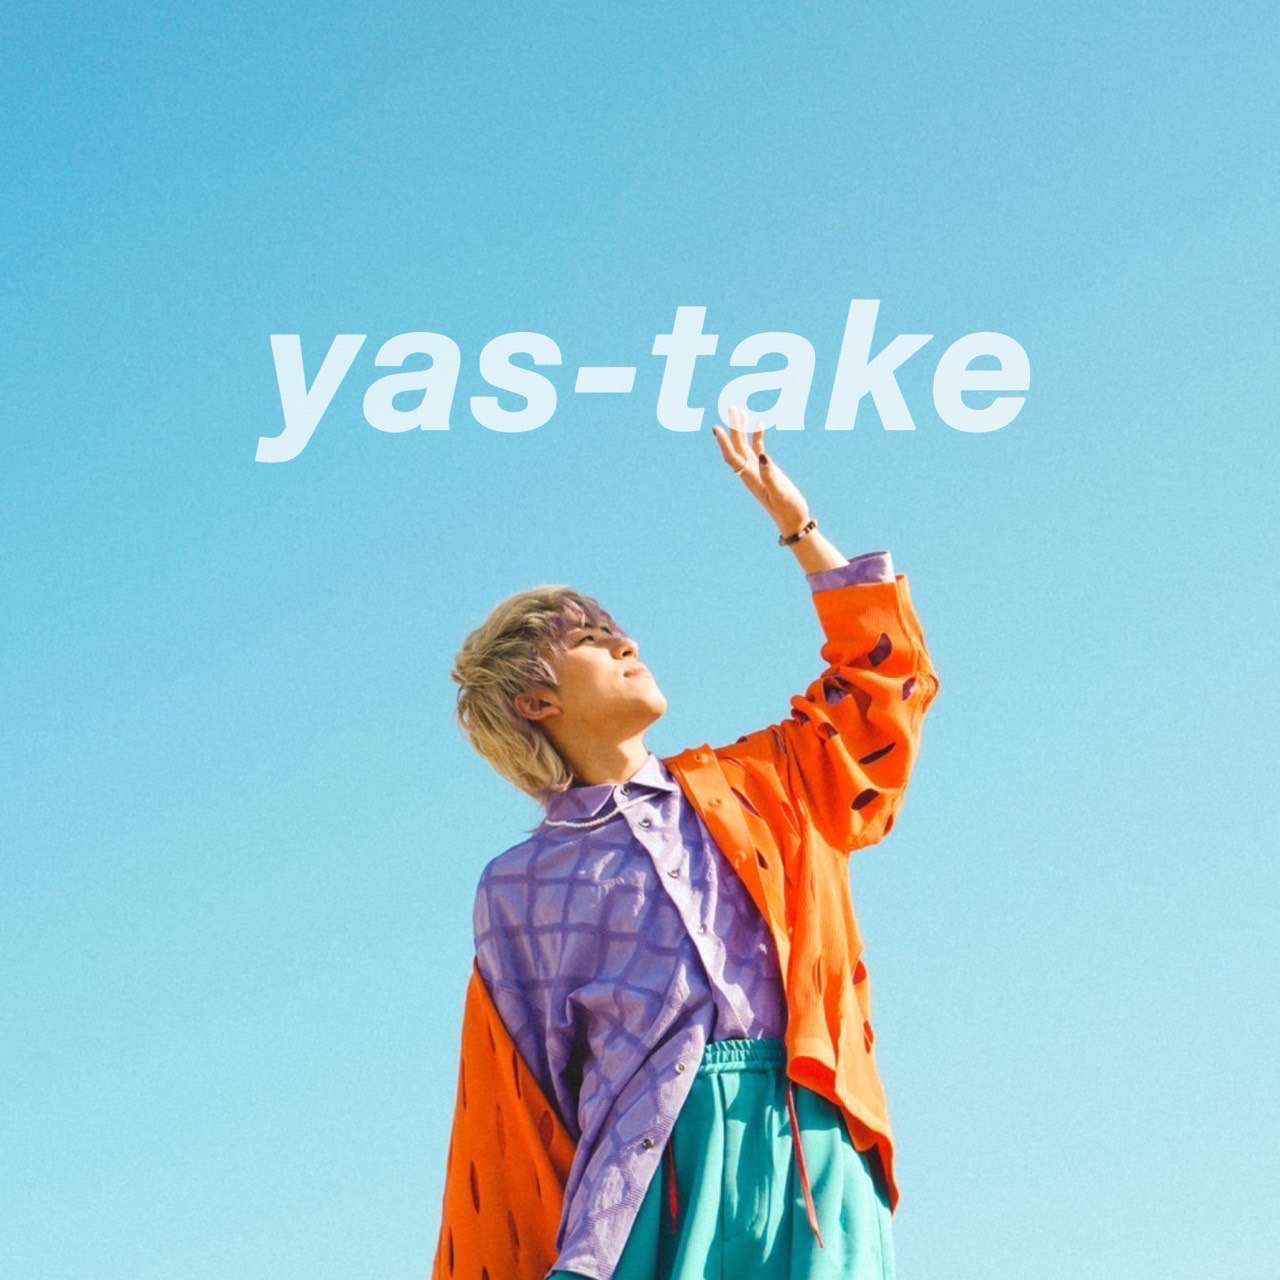 yas-take